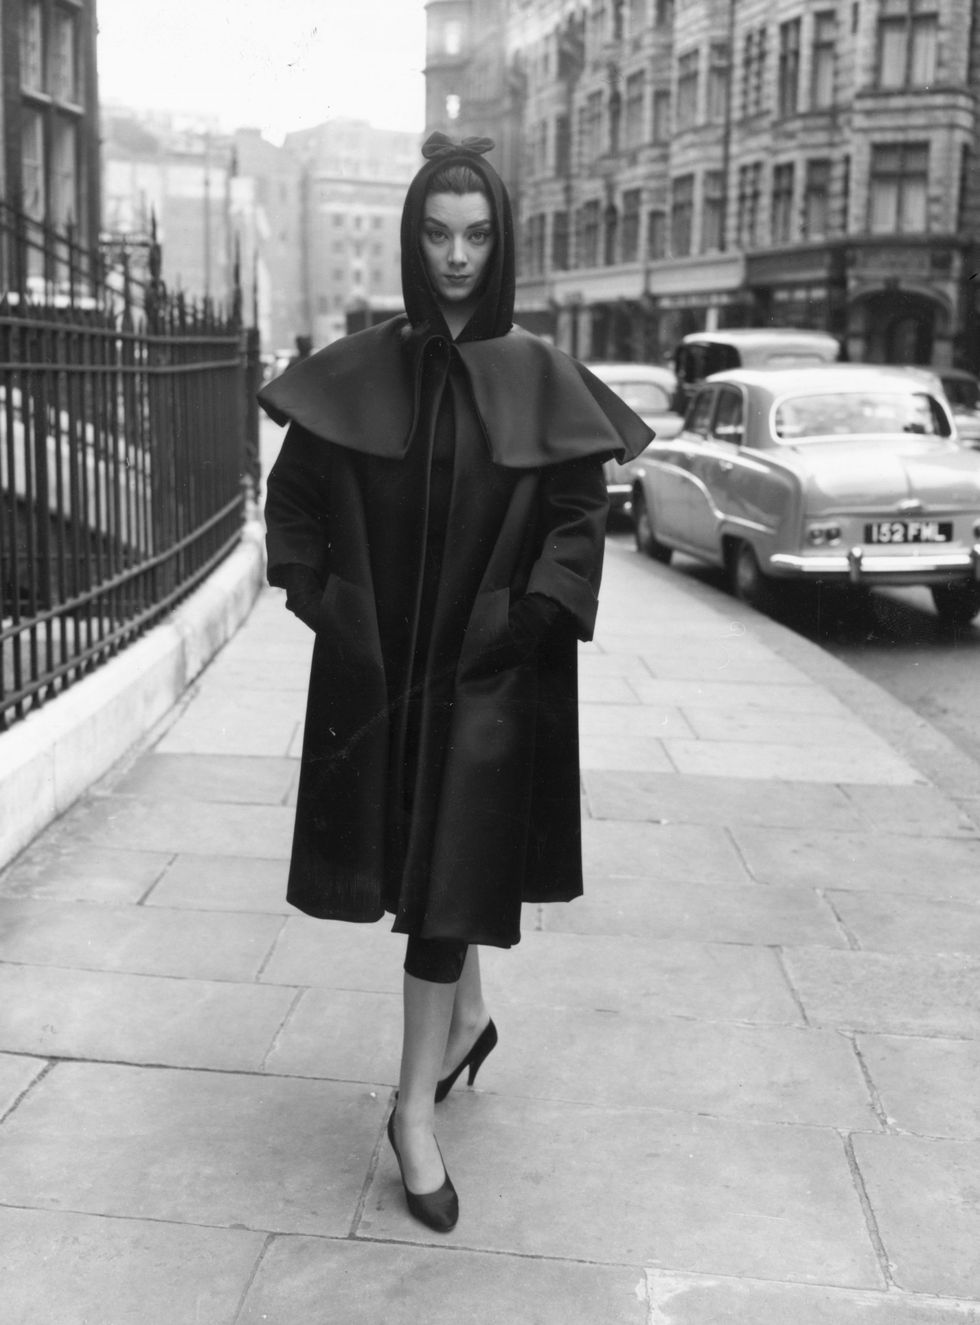 <p>Anche se&nbsp;alla fine degli anni 40 il New Look legittimato dallo stilista Christian Dior riscuoteva un immenso successo di press&nbsp;e di&nbsp;pubblico&nbsp;(per New Look&nbsp;s'intendeva&nbsp;una silhouette a forma di&nbsp;clessidra,&nbsp;punto vita strizzata tenuta ferma da una corpetto cucito all'interno dell'abito&nbsp;mentre la gonna era spesso&nbsp;svasata), Balenciaga non vide niente di nuovo in questo modo di vestire, anzi la&nbsp;donna era ancora una volta costretta&nbsp;in abiti compressi&nbsp;e forme rigide. Di qui la visione moderna del couturier basco&nbsp;di&nbsp;allentare il punto vita,&nbsp;ampliare le spalle, giocare con i tessuti, inventarsi il primo abito a tunica della storia e&nbsp;creare la prima giacca&nbsp; a palloncino. Il risultato fu una moda più comoda ma incredibilmente elegante.Dobbiamo a lui la&nbsp;creazioni&nbsp;della silhouette minimalista, che ha influenzato tutti gli anni '50 e che oggi si ritrova nelle collezioni contemporanee di&nbsp;brand come&nbsp;Céline e&nbsp;Jil Sander.<span class="redactor-invisible-space" data-verified="redactor" data-redactor-tag="span" data-redactor-class="redactor-invisible-space"></span></p>